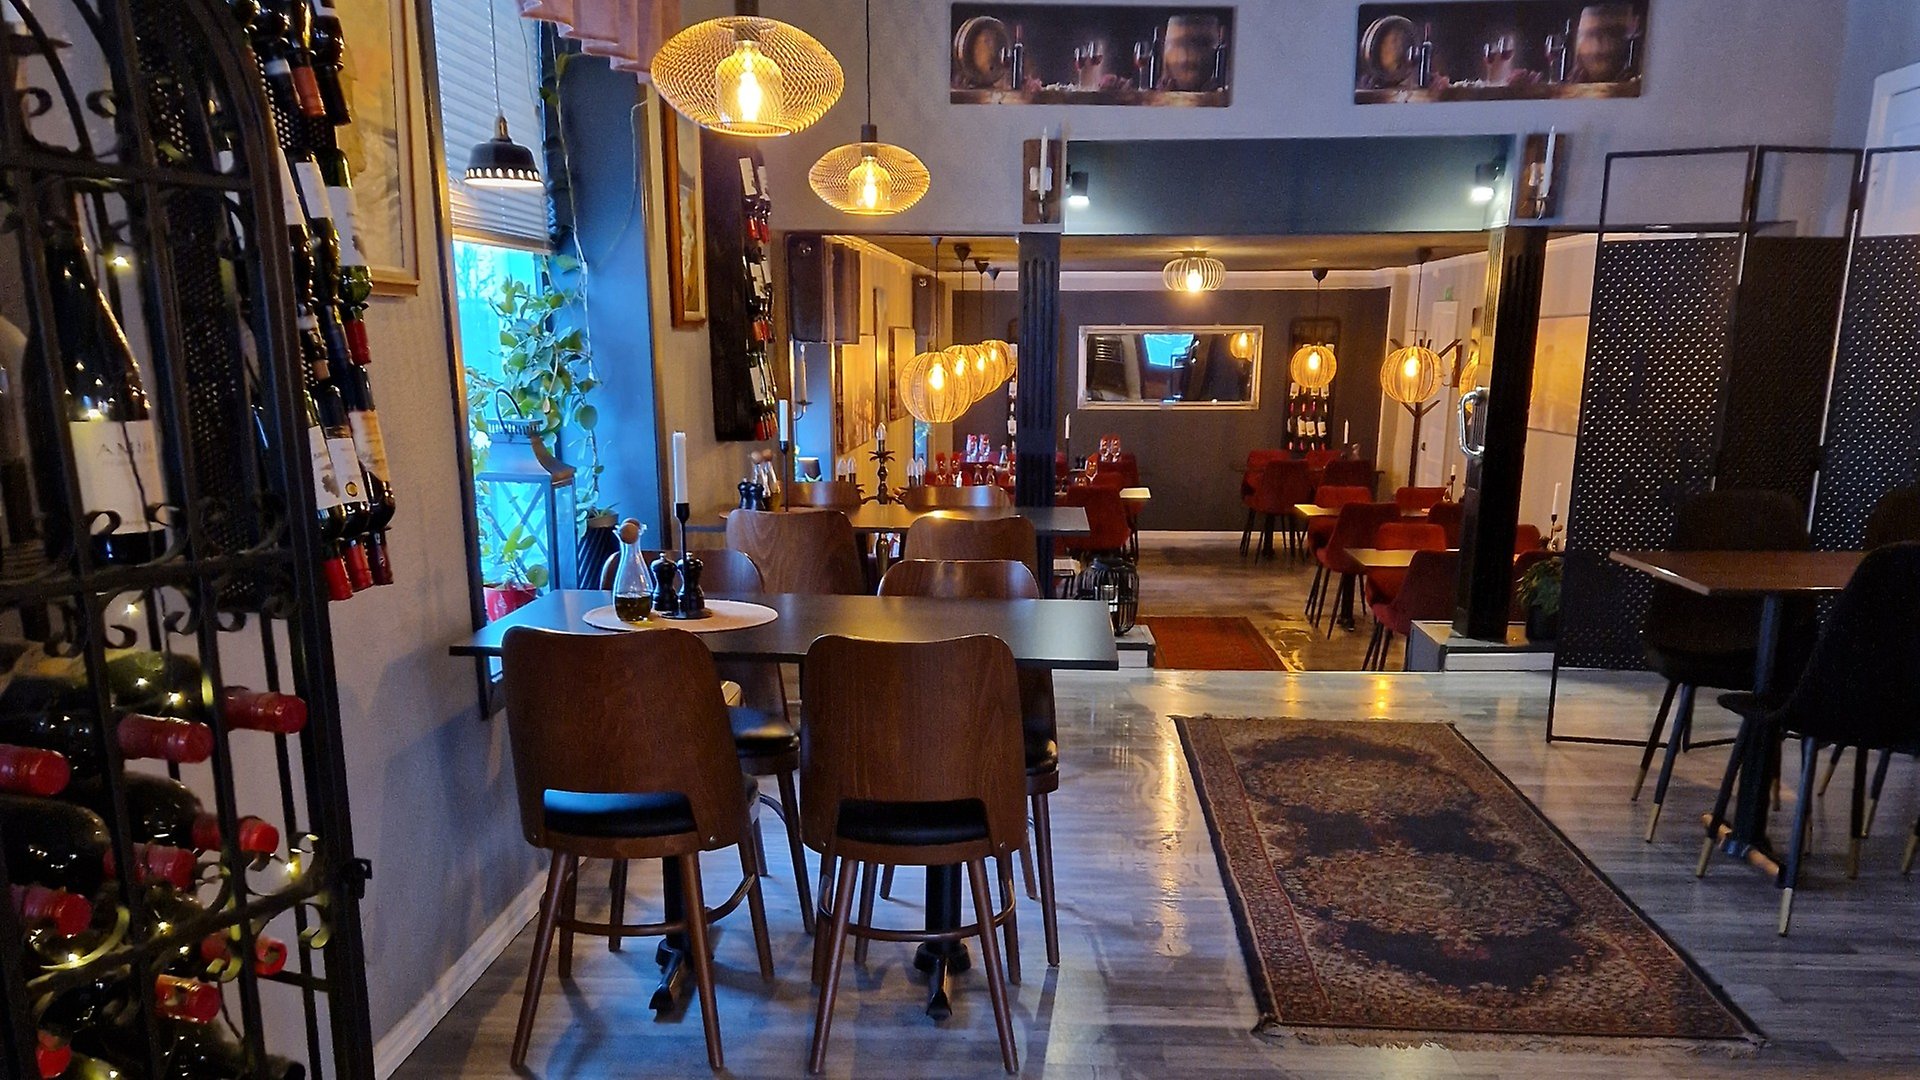 Interiör på restaurangen Casa Mia. Vinställ till vänster i bilden. bord och stolar, matta på golvet, varm belysning i taket.